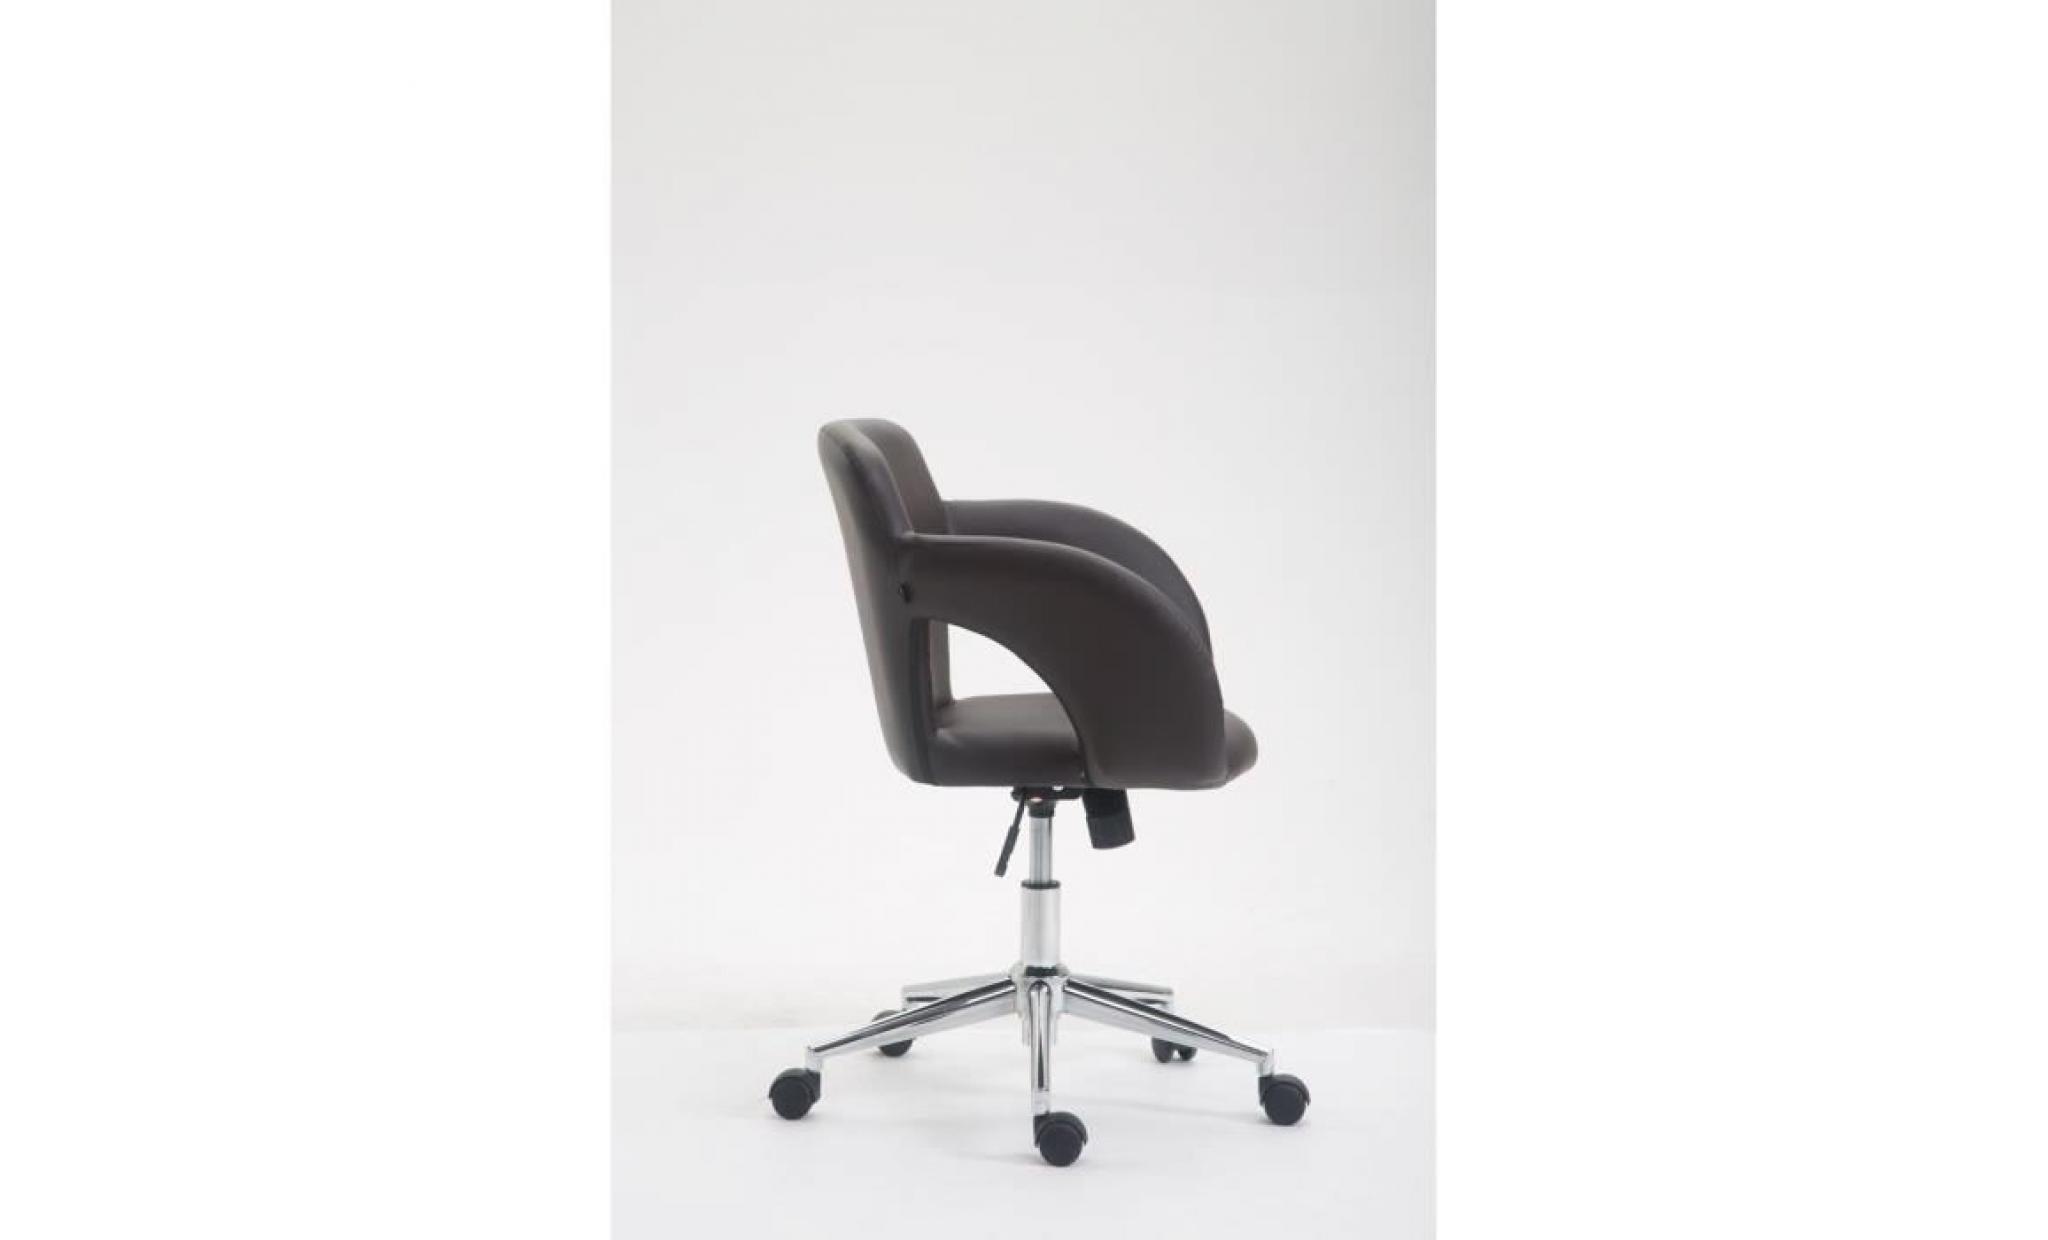 clp chaise de bureau edison en similicuir, fauteuil de bureau avec accoudoirs, mécanisme d'inclinason intégré, hauteur ajustable pas cher